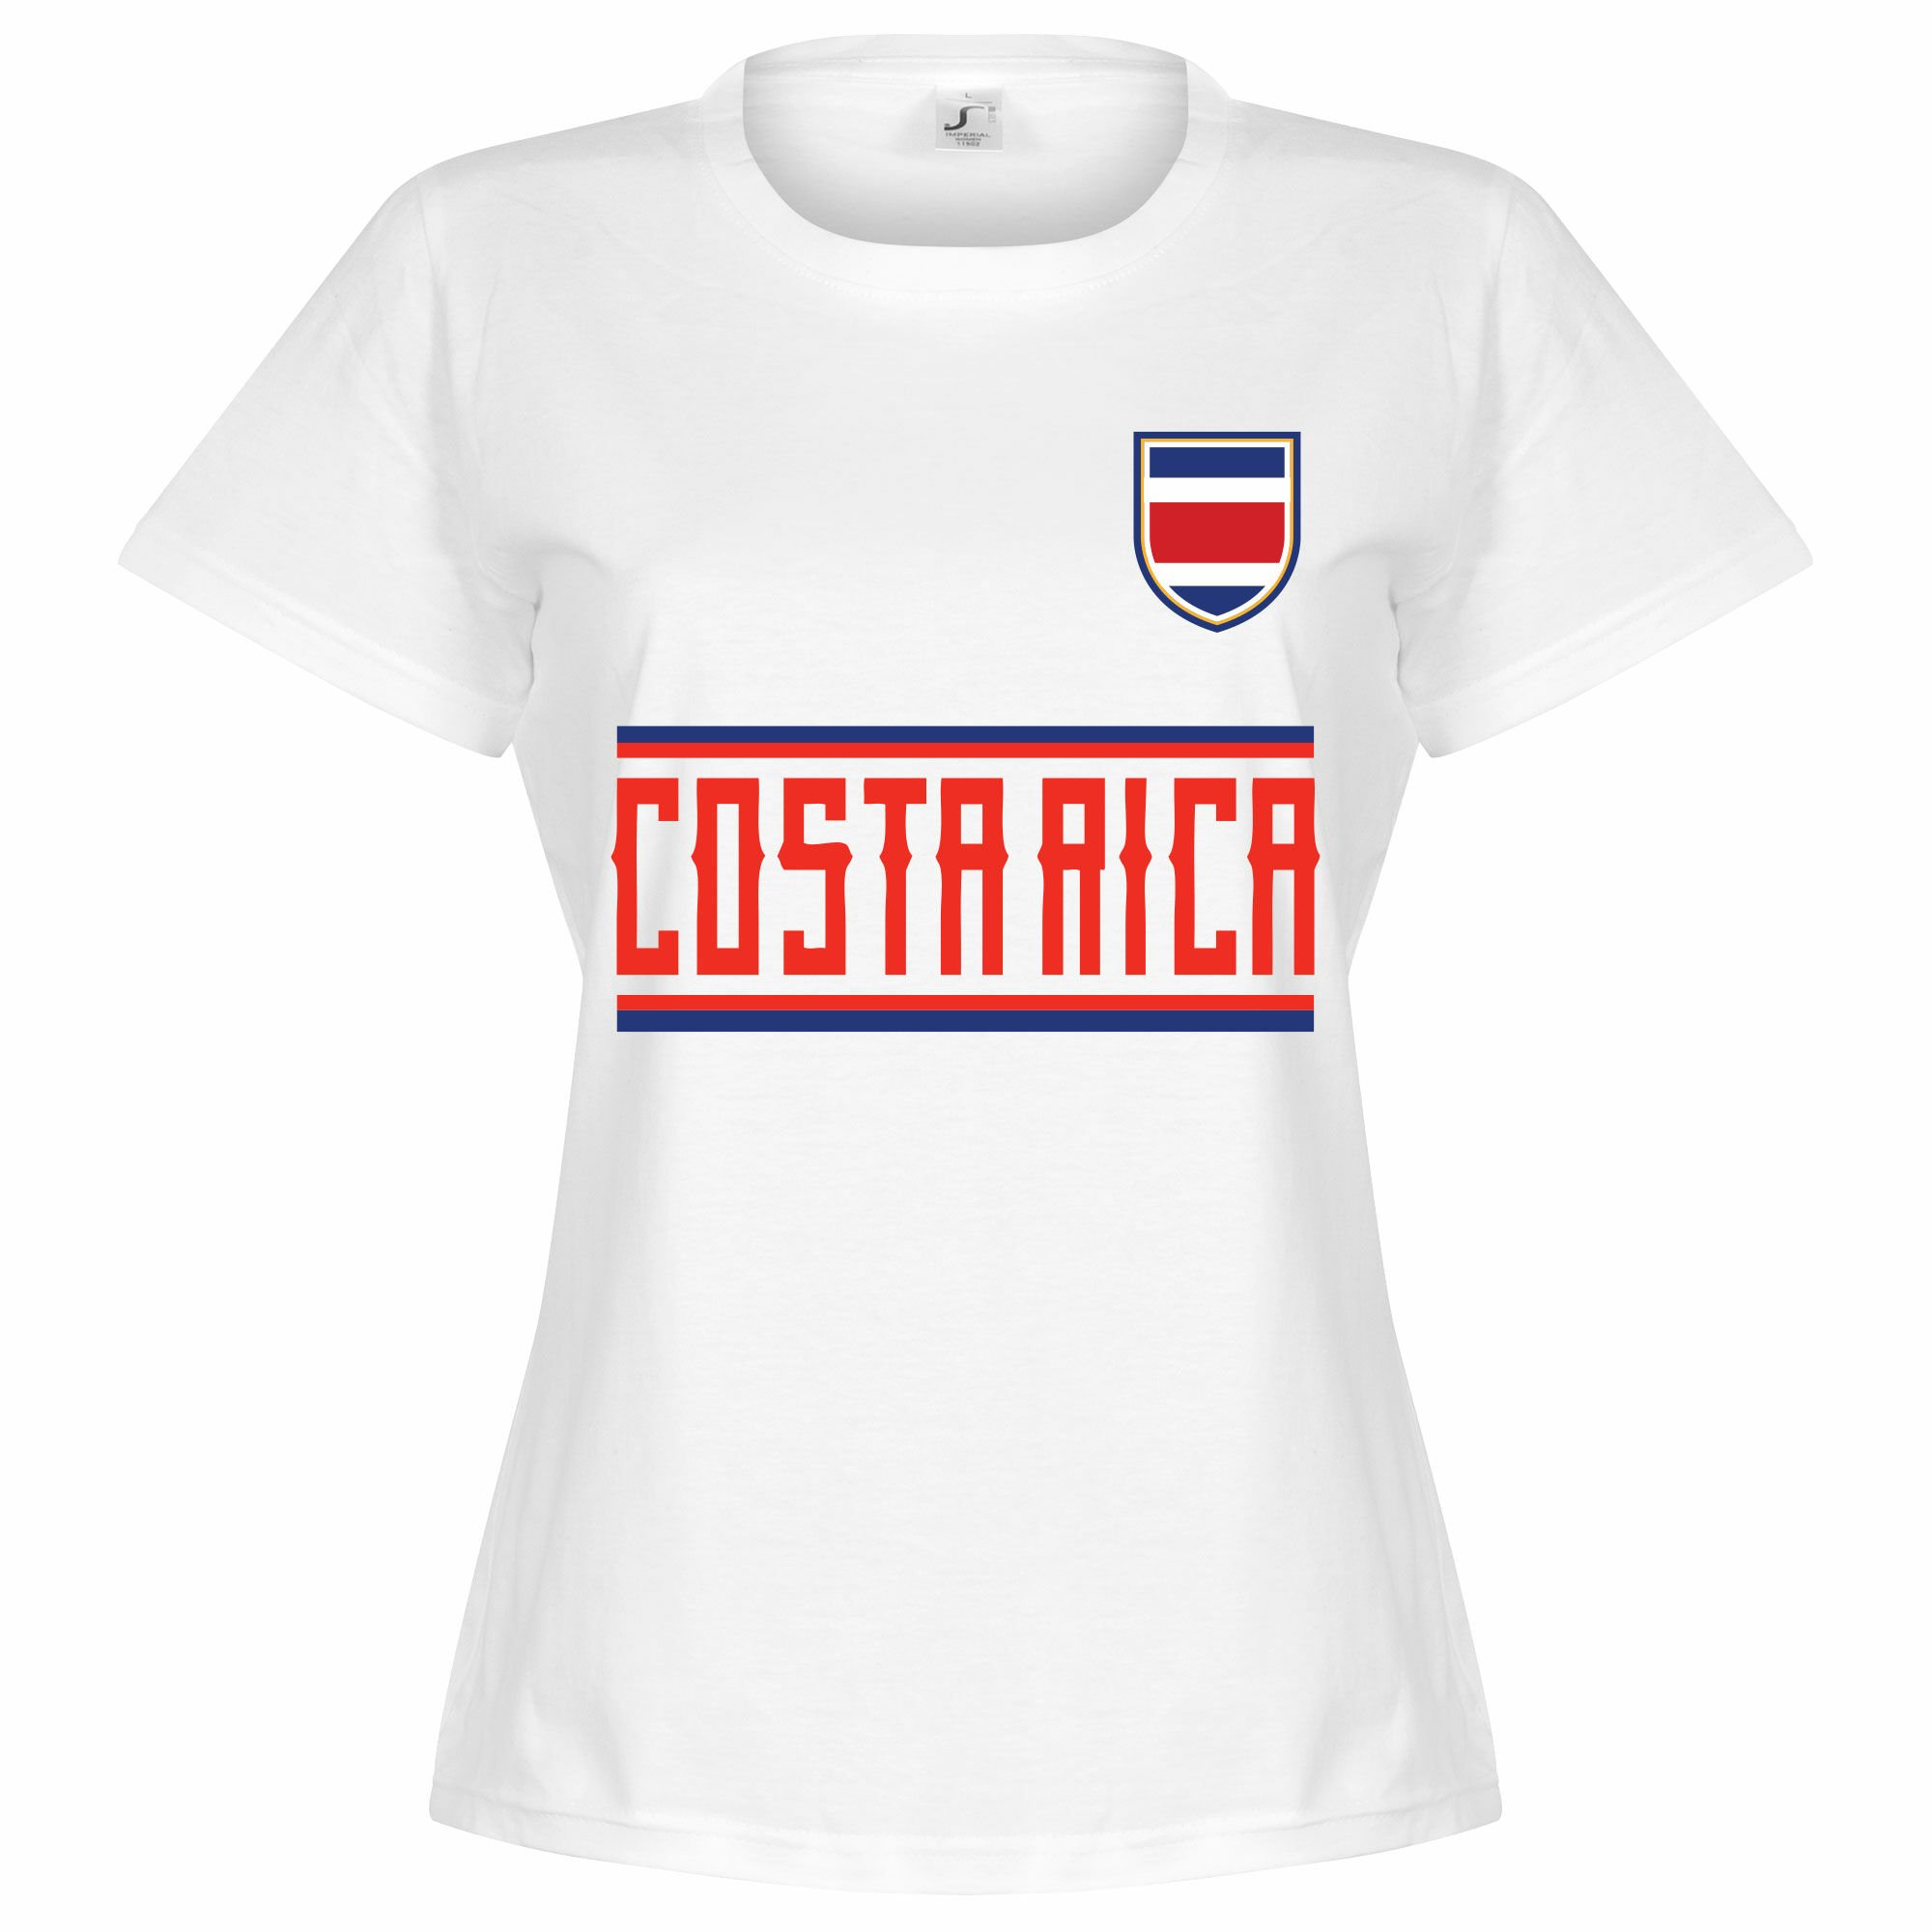 Kostarika - Tričko dámské - bílé